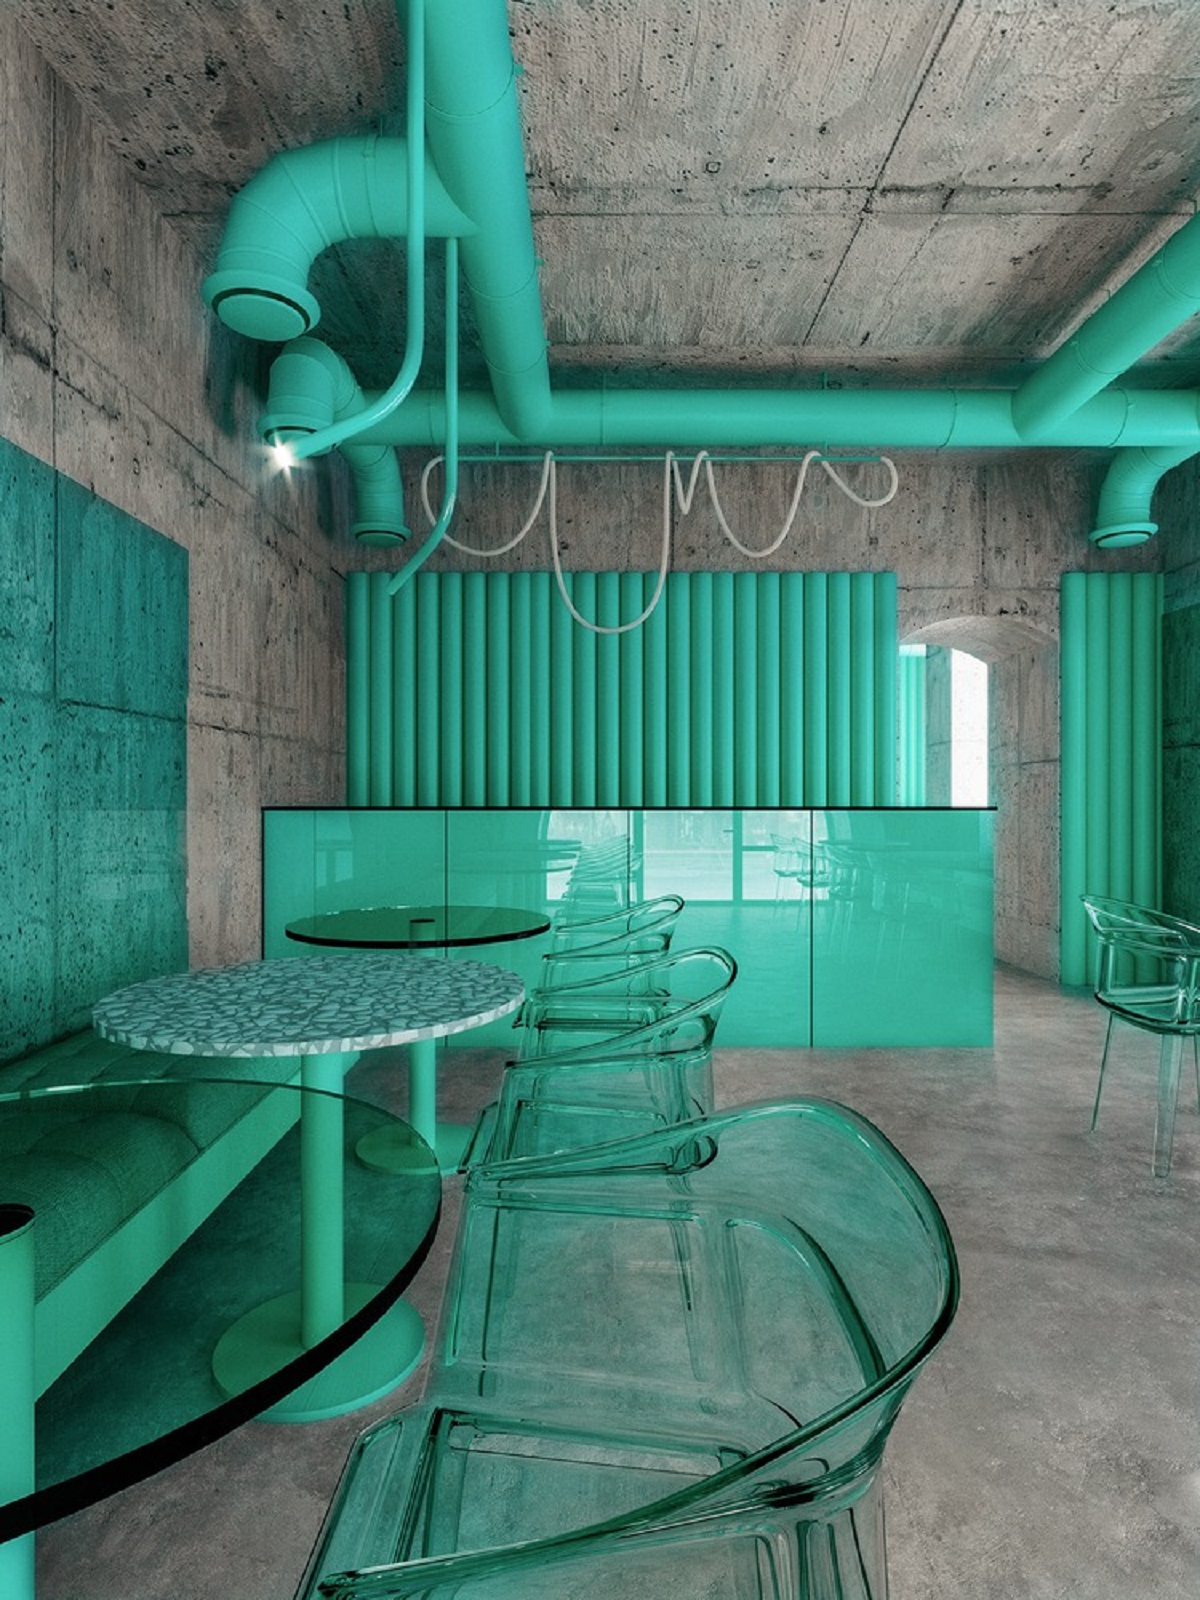 interiorDaily-quan-cafe-mau-xanh-o-new-york-reutov-design